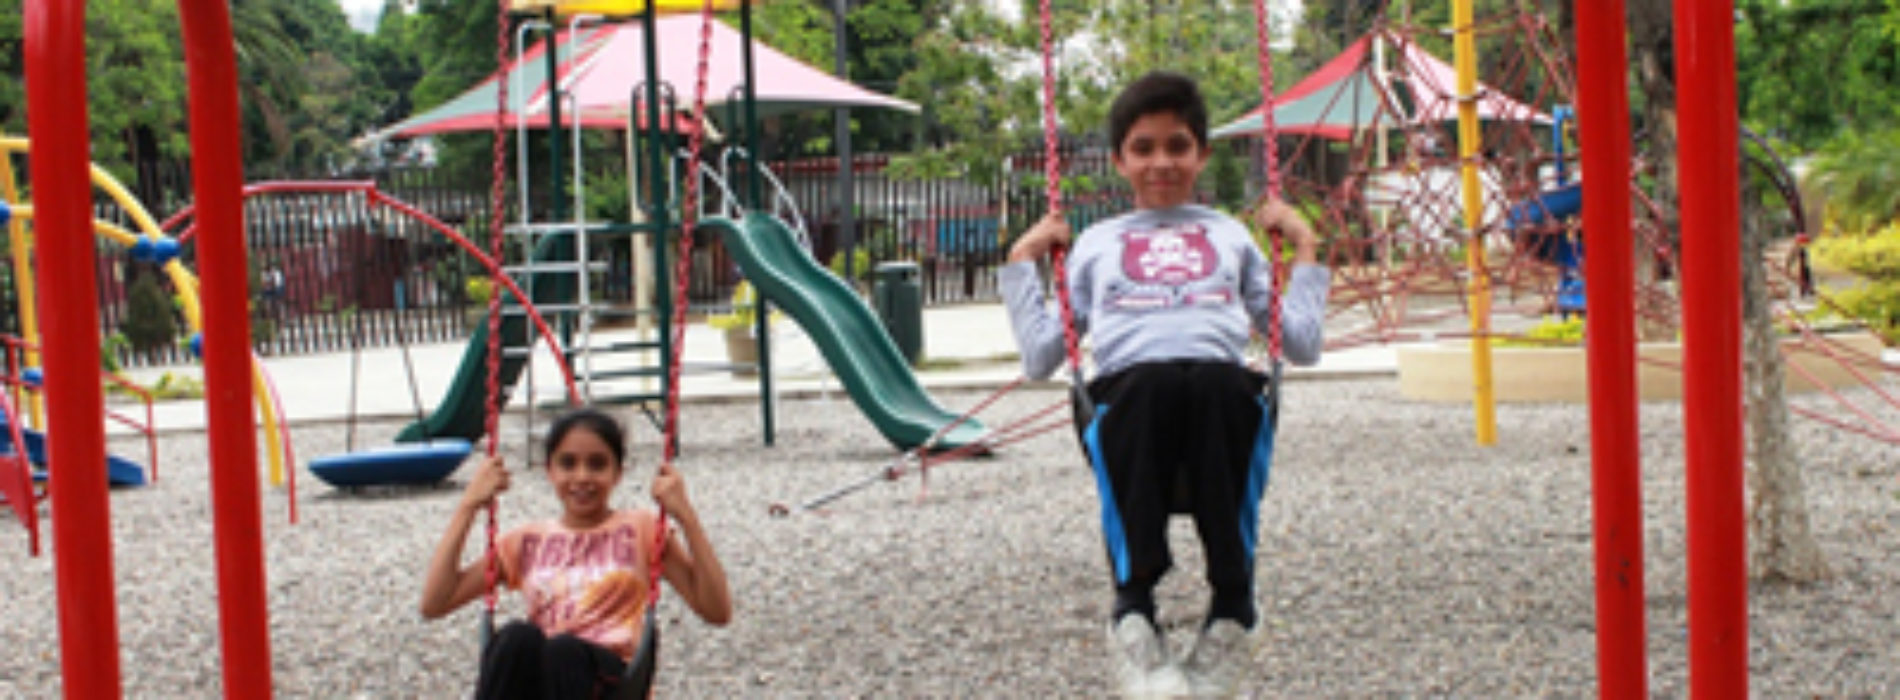 Diversión garantizada en el Parque Recreativo Infantil  “Oaxaca Bicentenario”